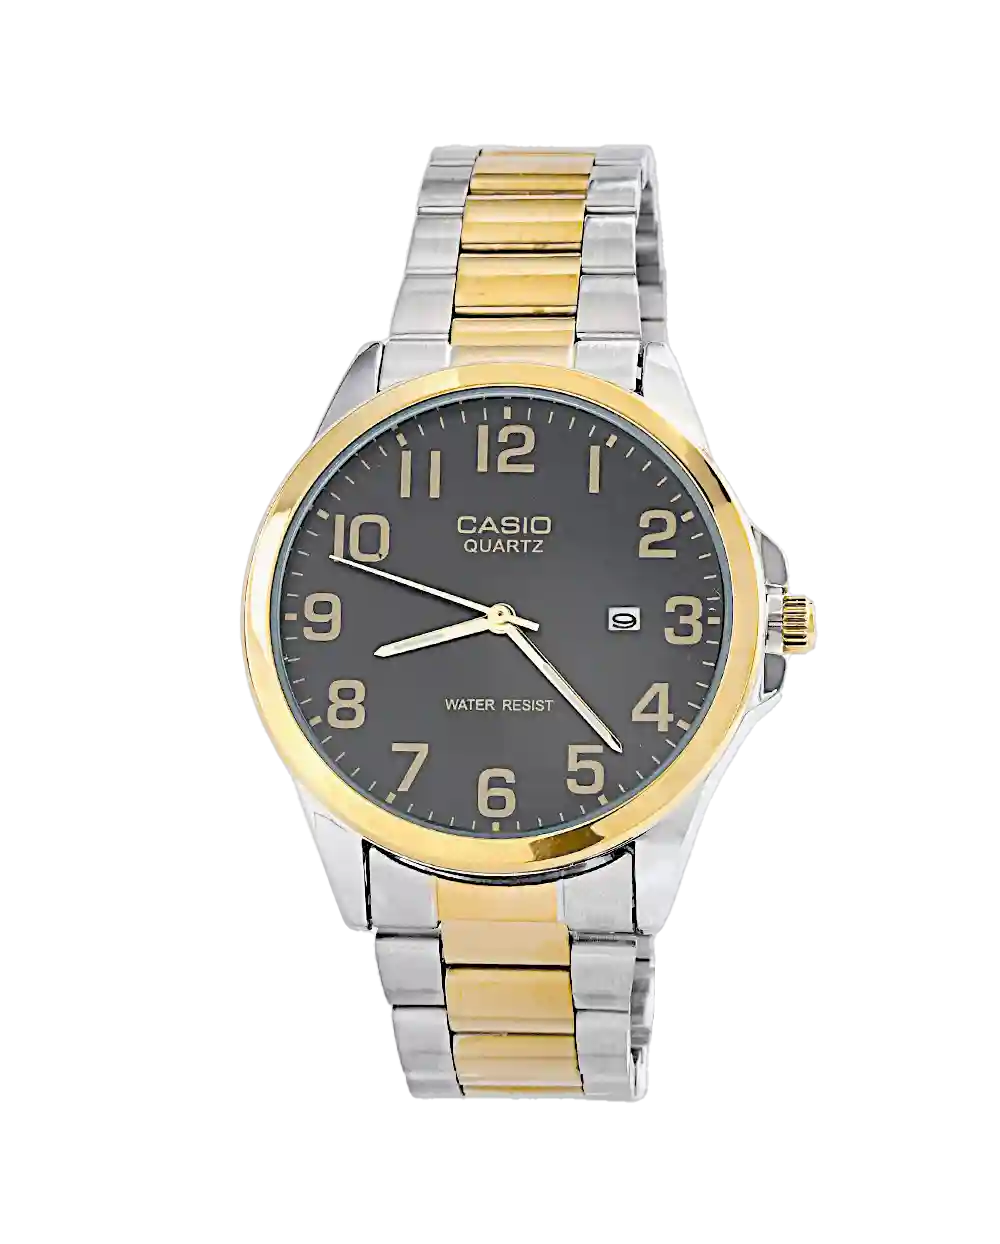 قیمت و خرید ساعت مچی مردانه کاسیو CASIO مدل 1556 رنگ نقره ای طلایی همراه با جعبه ی کادویی و ارسال رایگان | ساعت کاسیو اصلی | ساعت مچی مردانه شیک و اصلی کاسیو